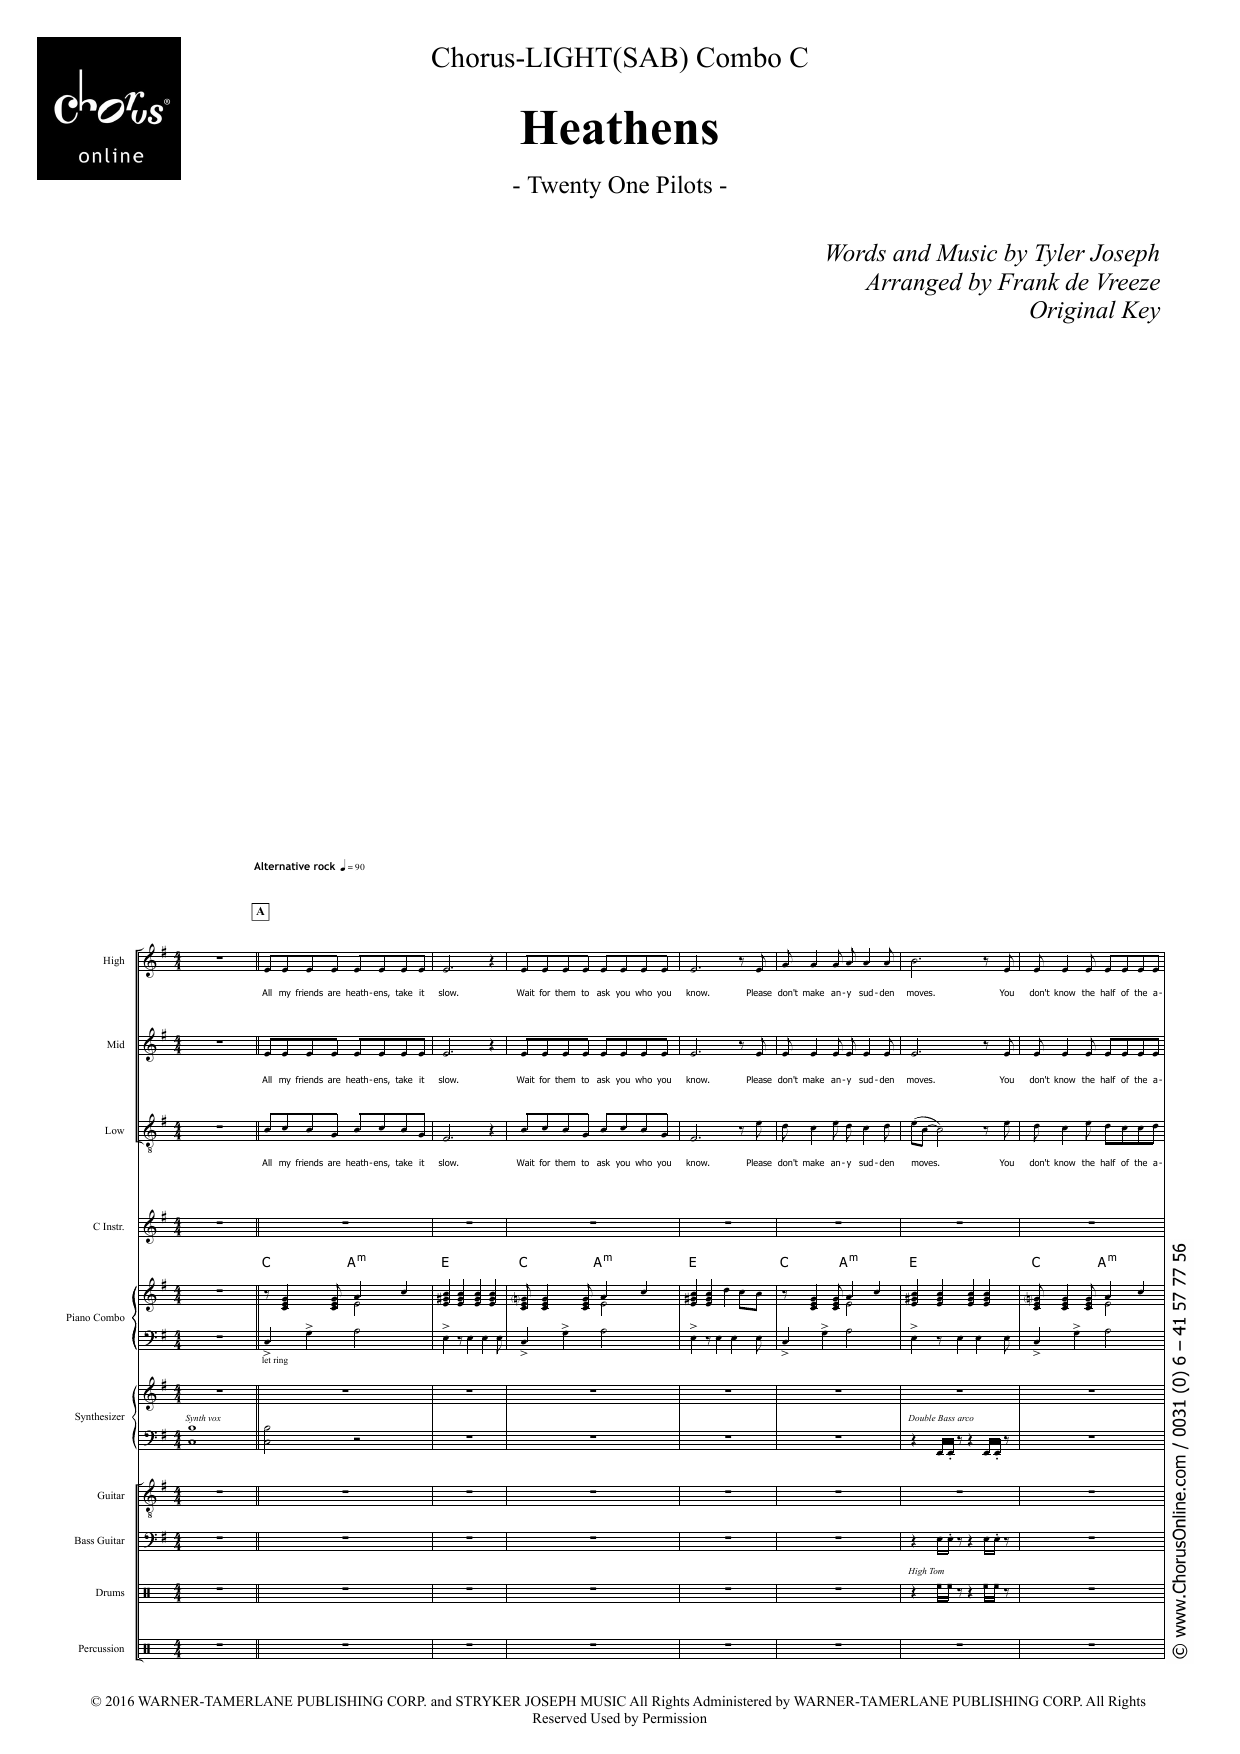 Twenty One Pilots Heathens (arr. Frank de Vreeze) sheet music notes printable PDF score